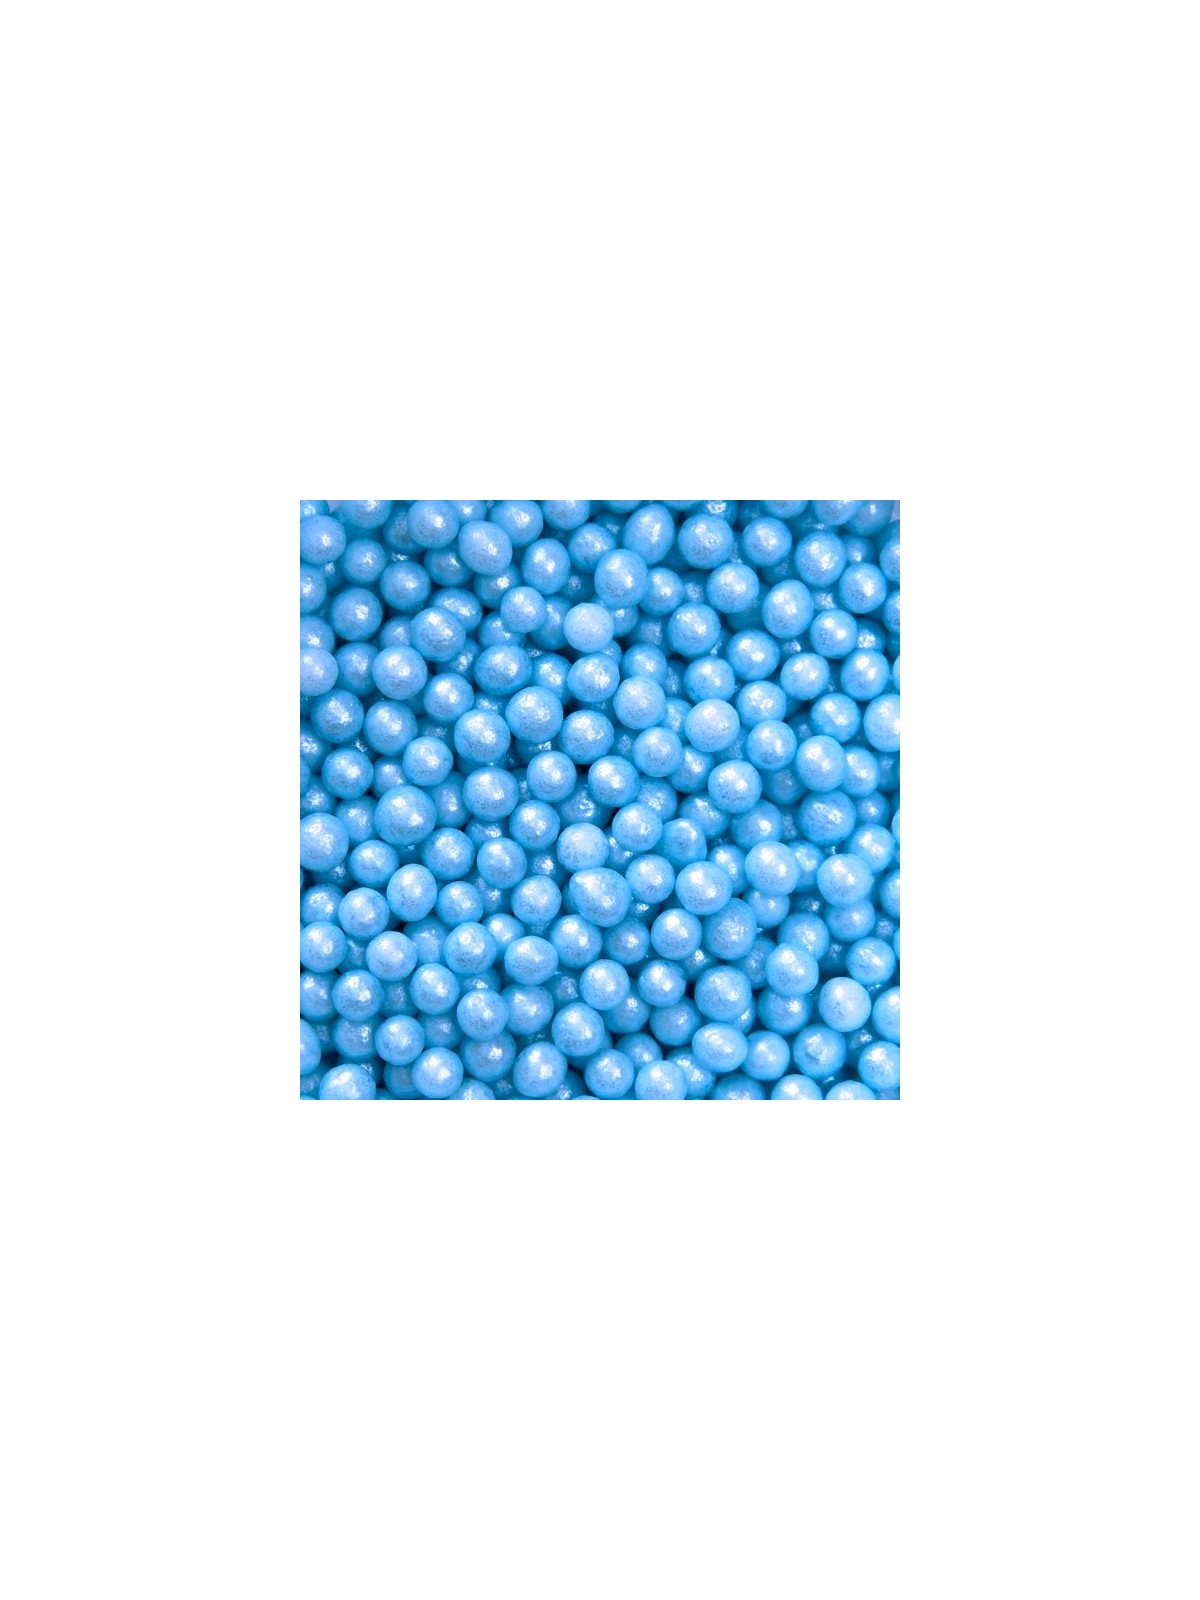 Sugar pearls 4mm - pearlblue - 100g